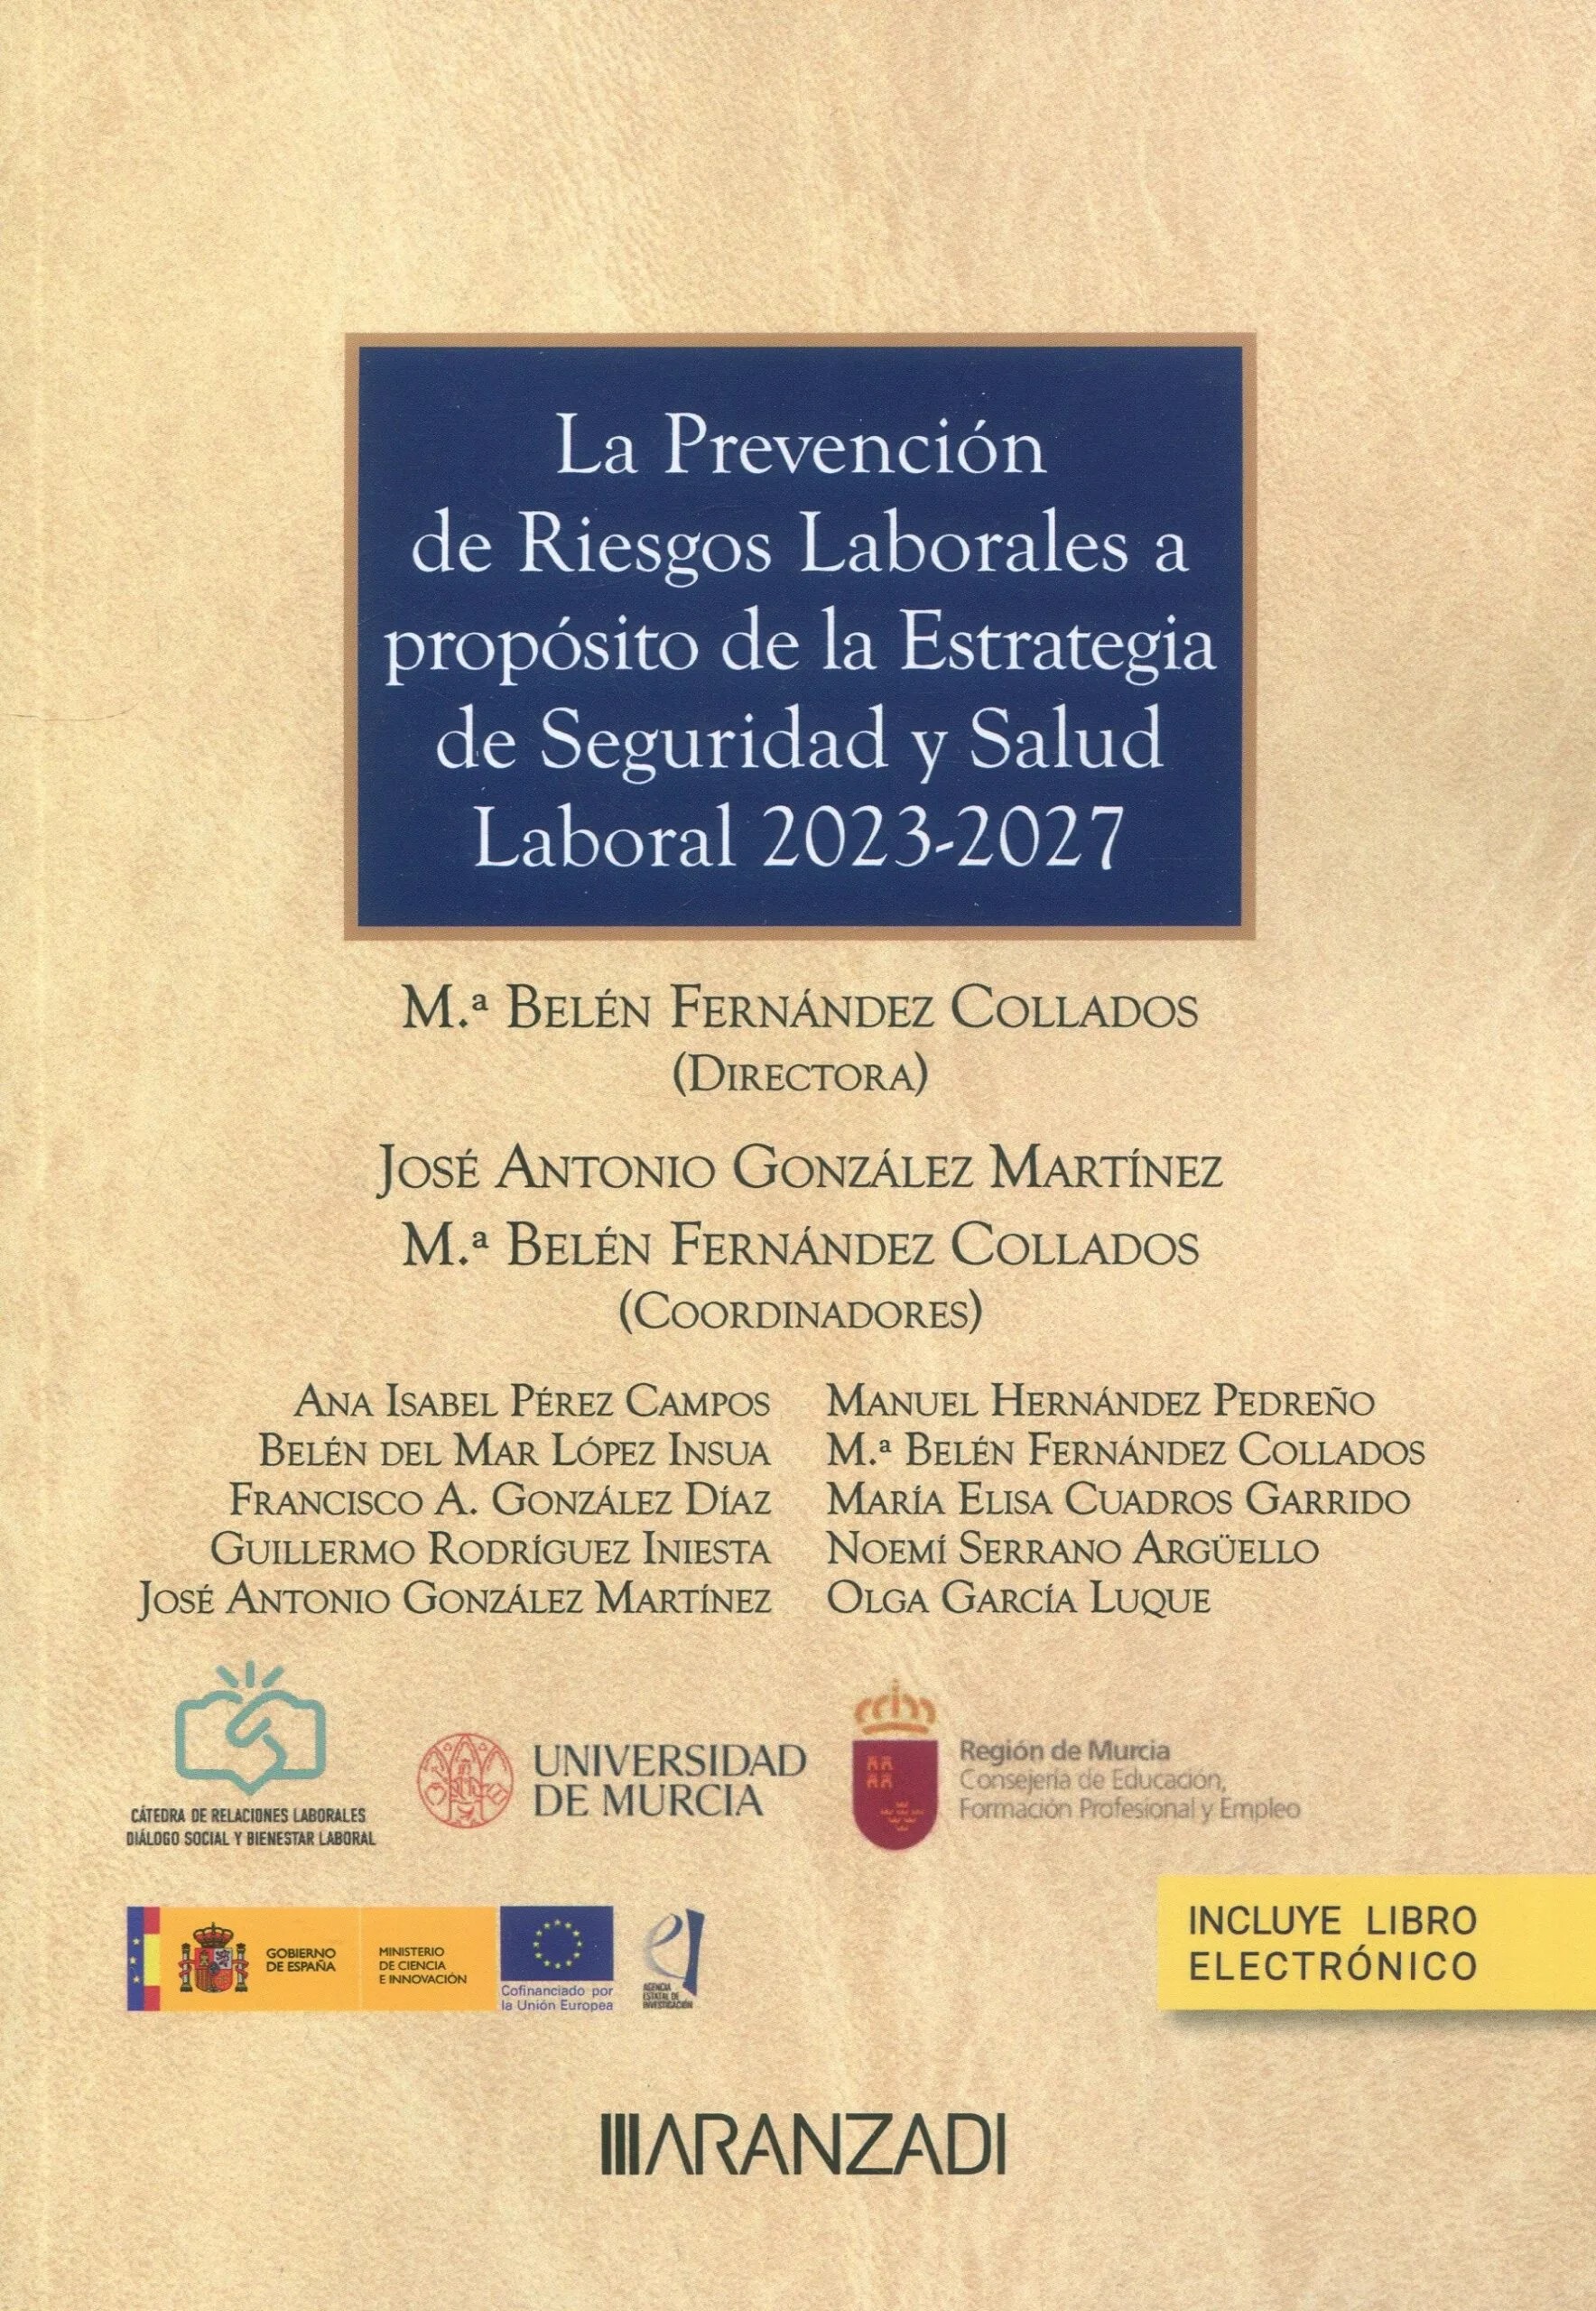 La Prevención de Riesgos Laborales a propósito de la Estrategia de Seguridad y Salud Laboral 2023-2027